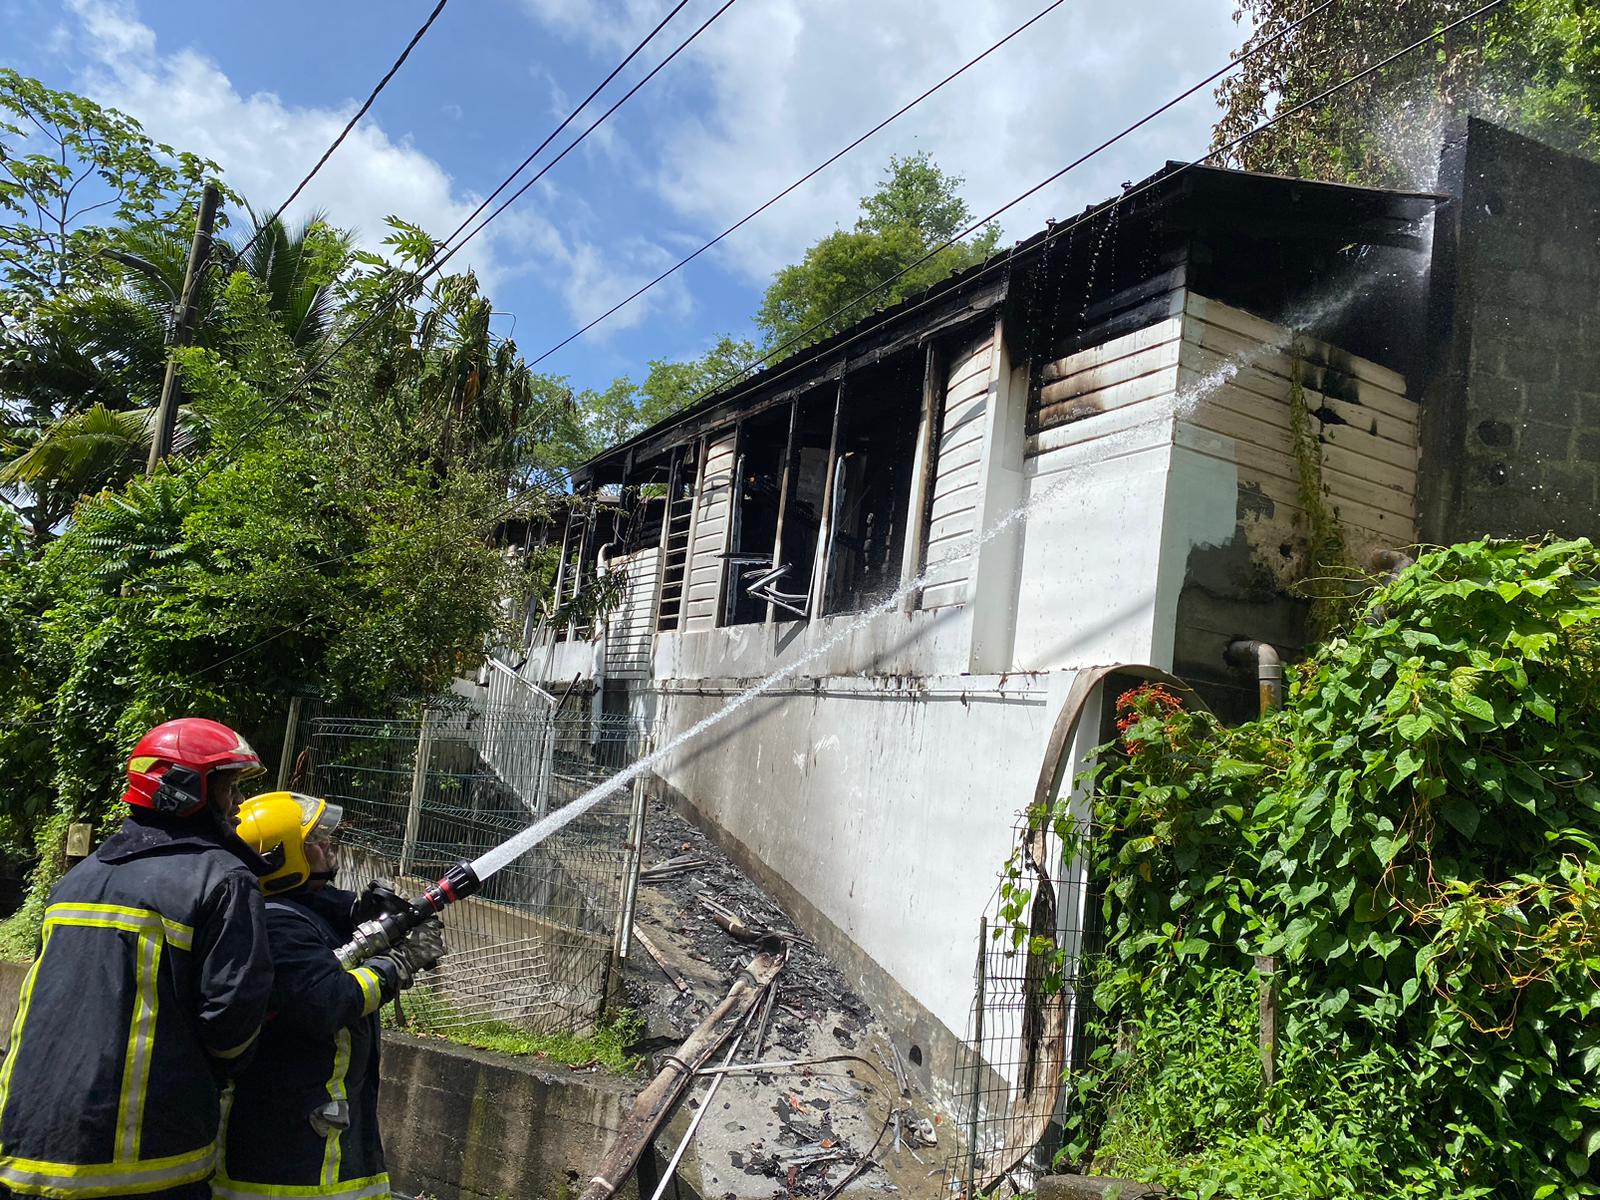     Feu de maison et véhicules brûlés à Fort-de-France : nuit chargée pour les pompiers

